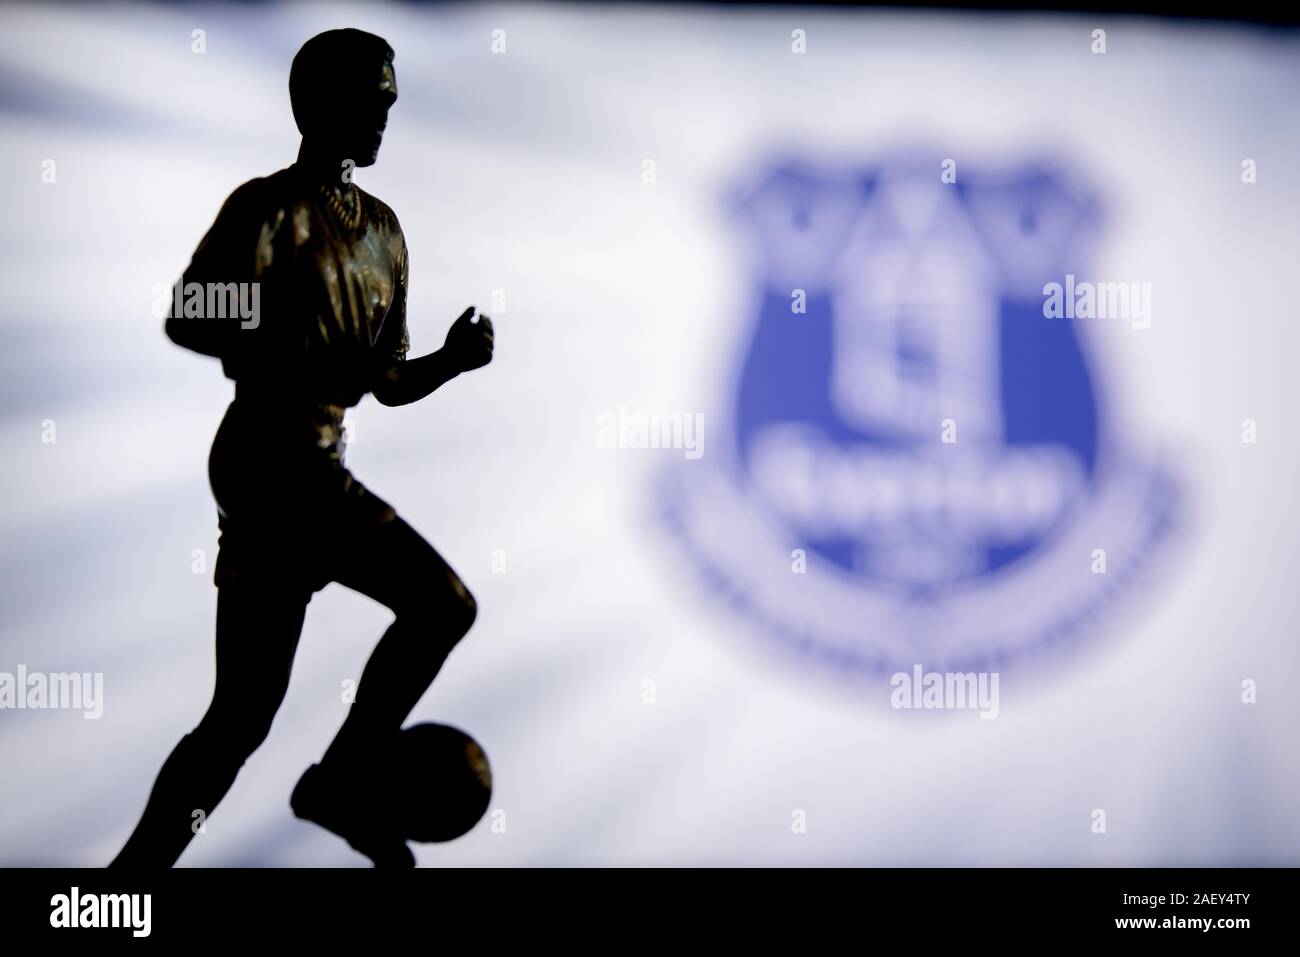 Londres, Inglaterra, en julio. 1. 2019: el logotipo del Club de Fútbol Everton, Premier League, Inglaterra. La silueta del jugador de fútbol. Foto de stock